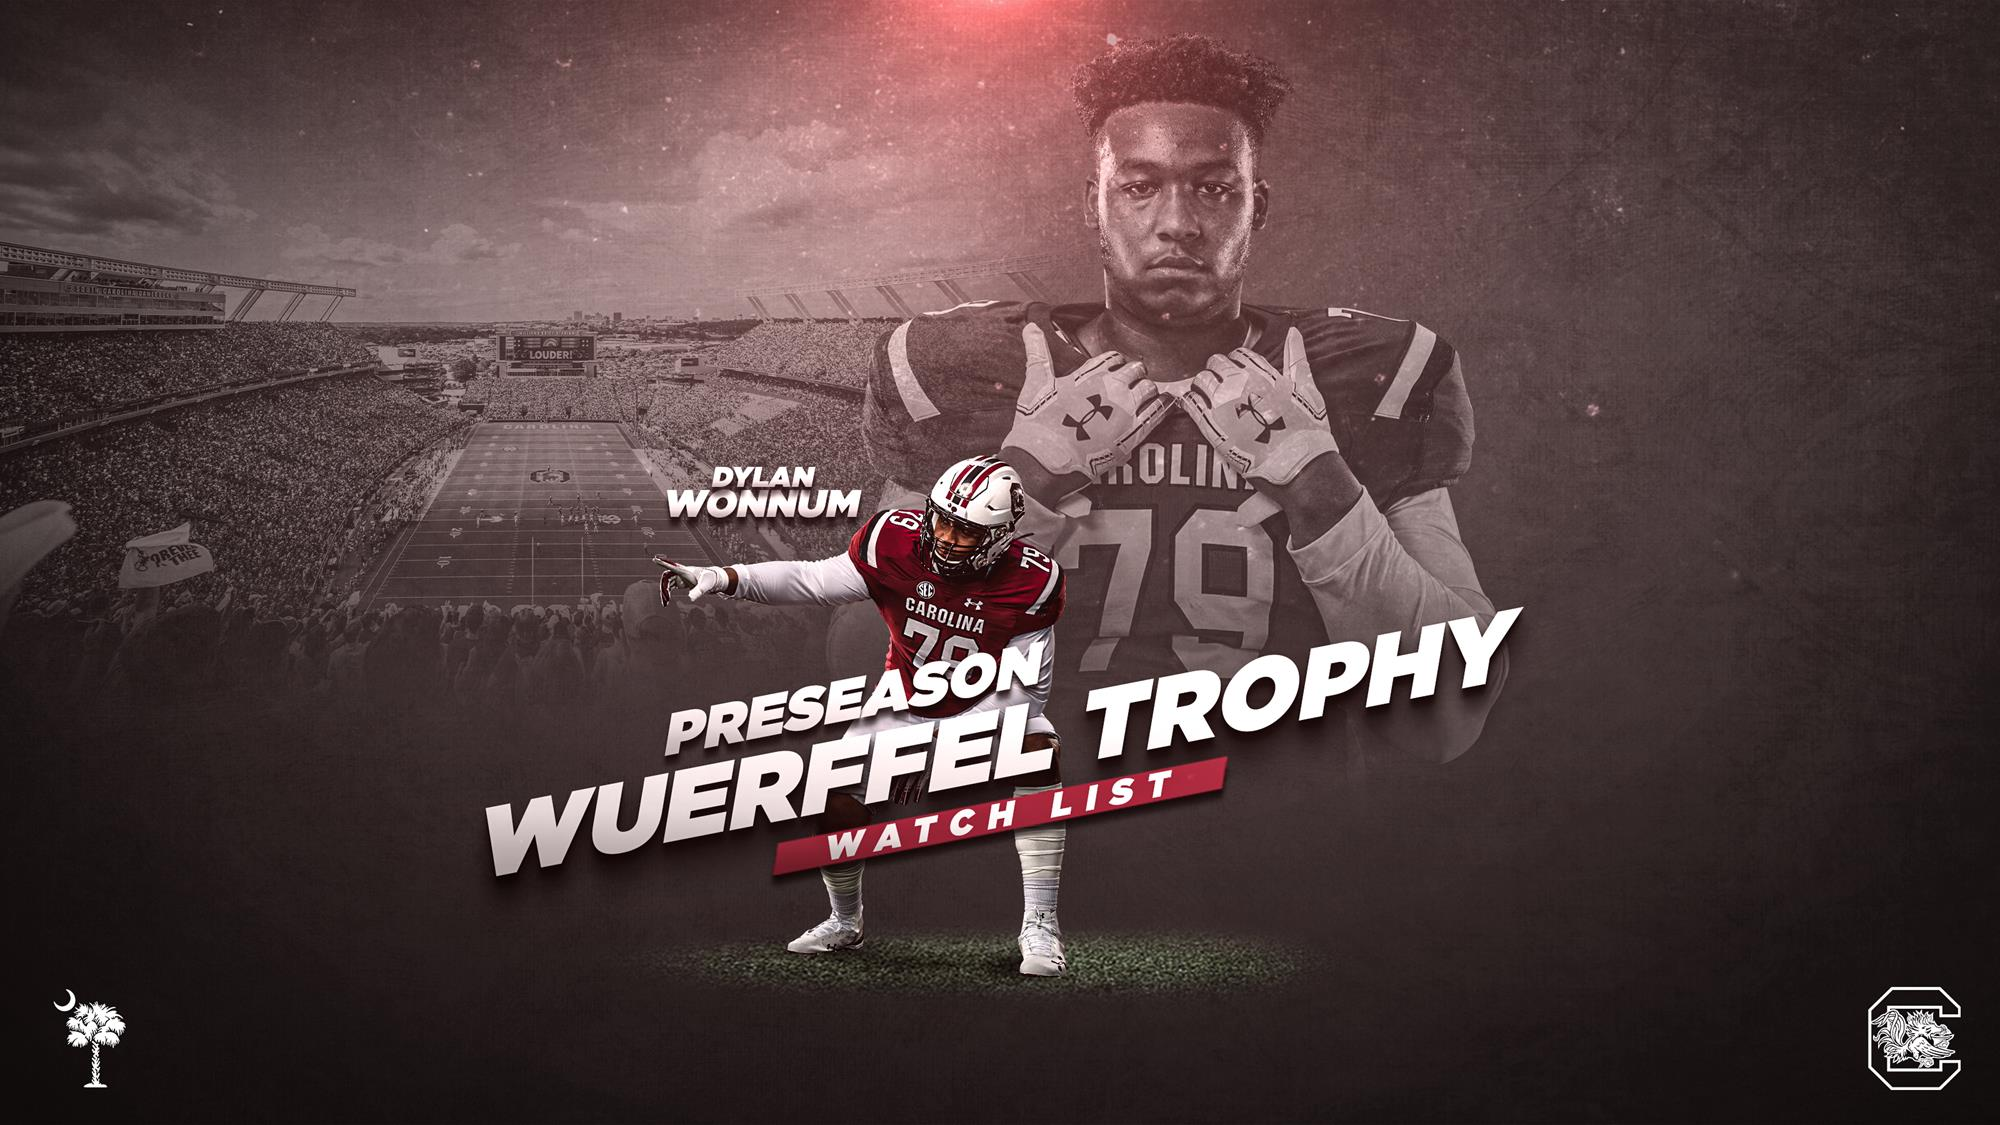 Wonnum Nominated for Wuerffel Trophy